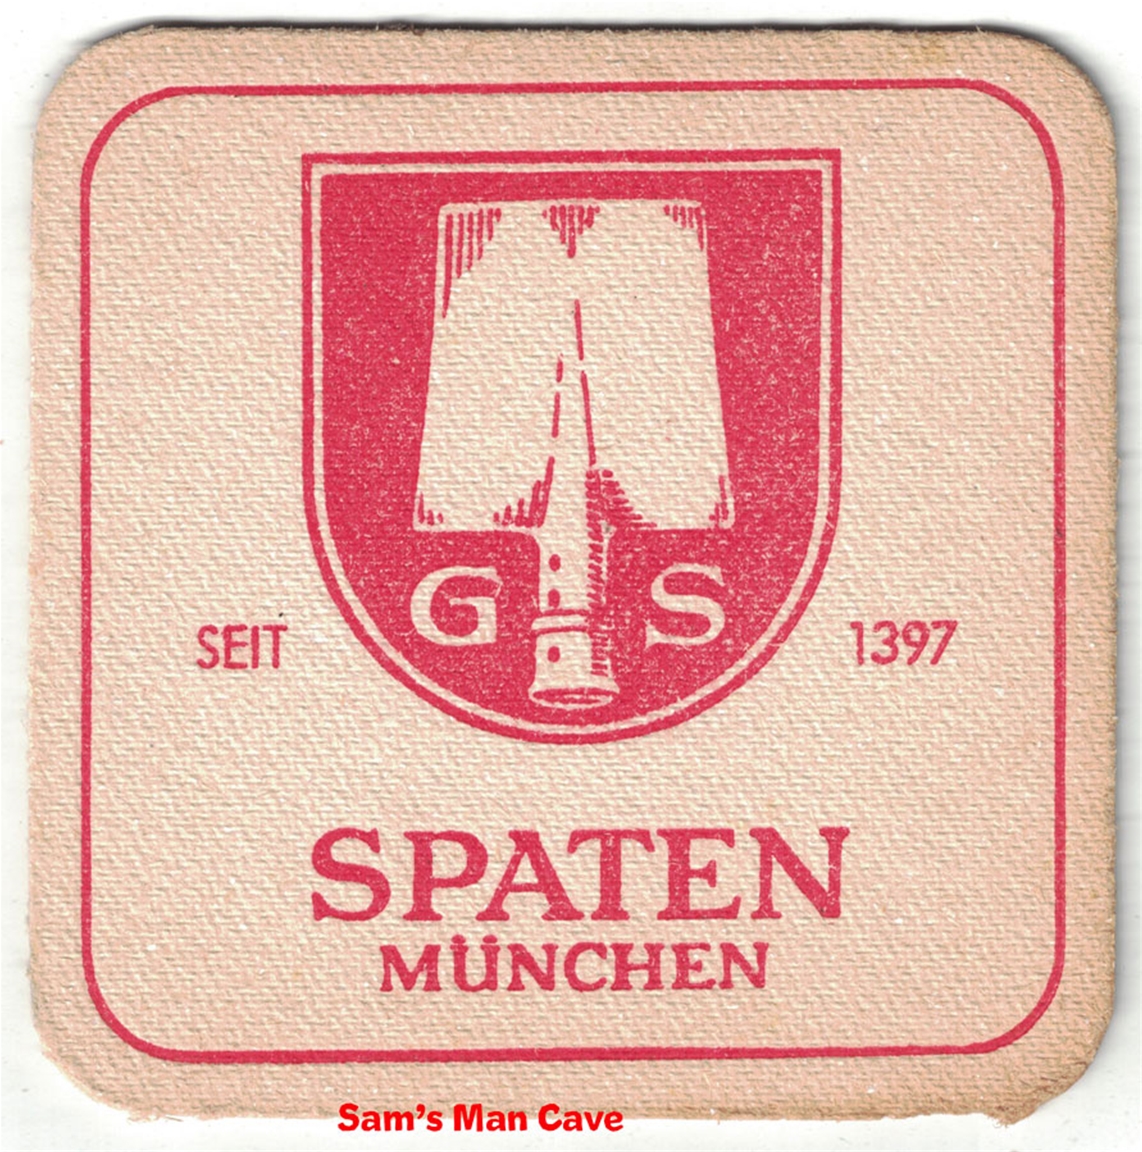 Spaten Munchen Beer Coaster